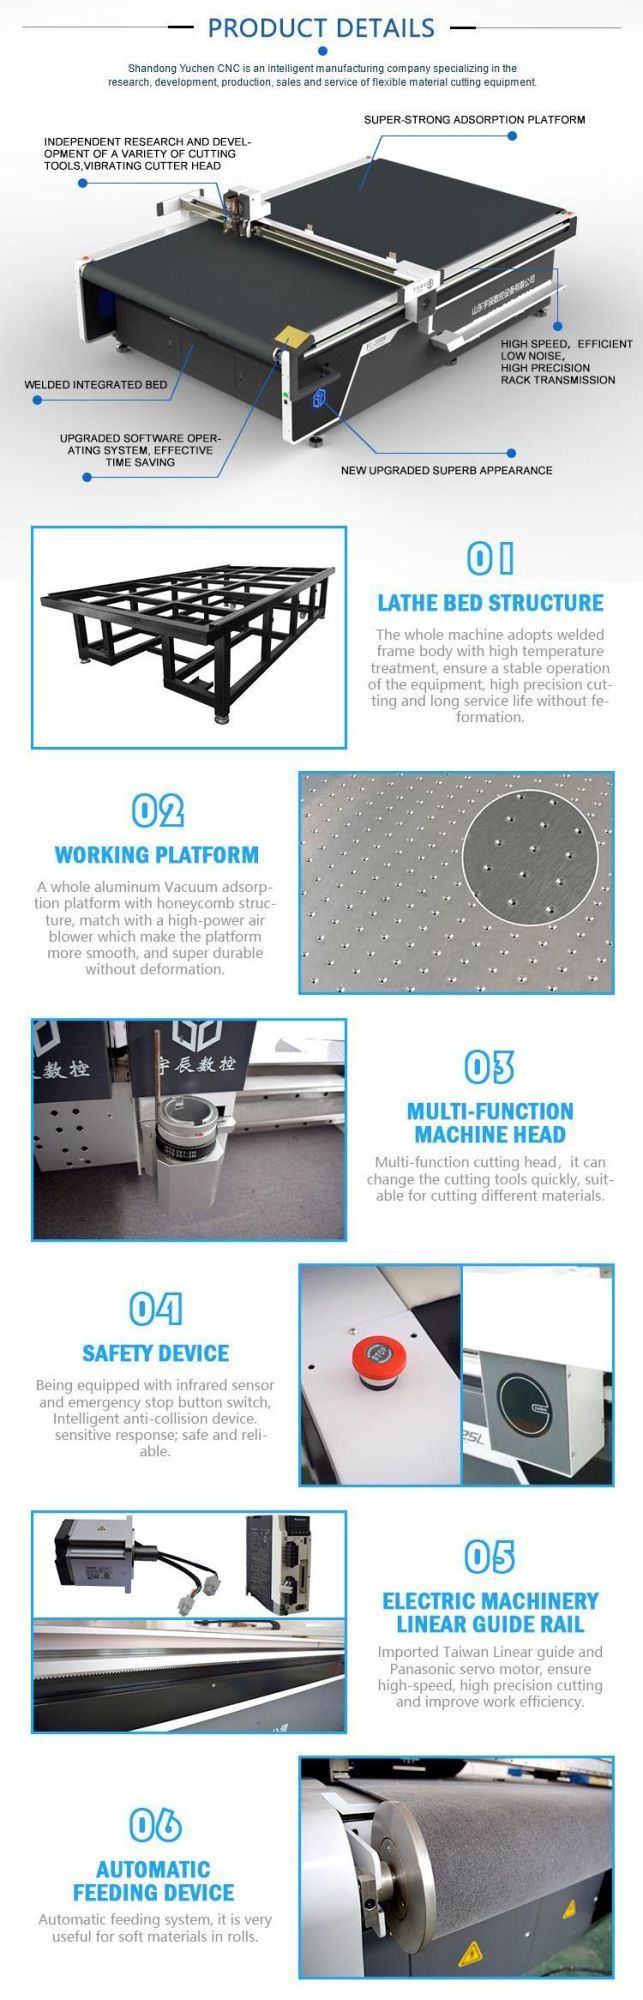 Printed Carpet CNC Cutter Oscillating Knife Cutting Machine